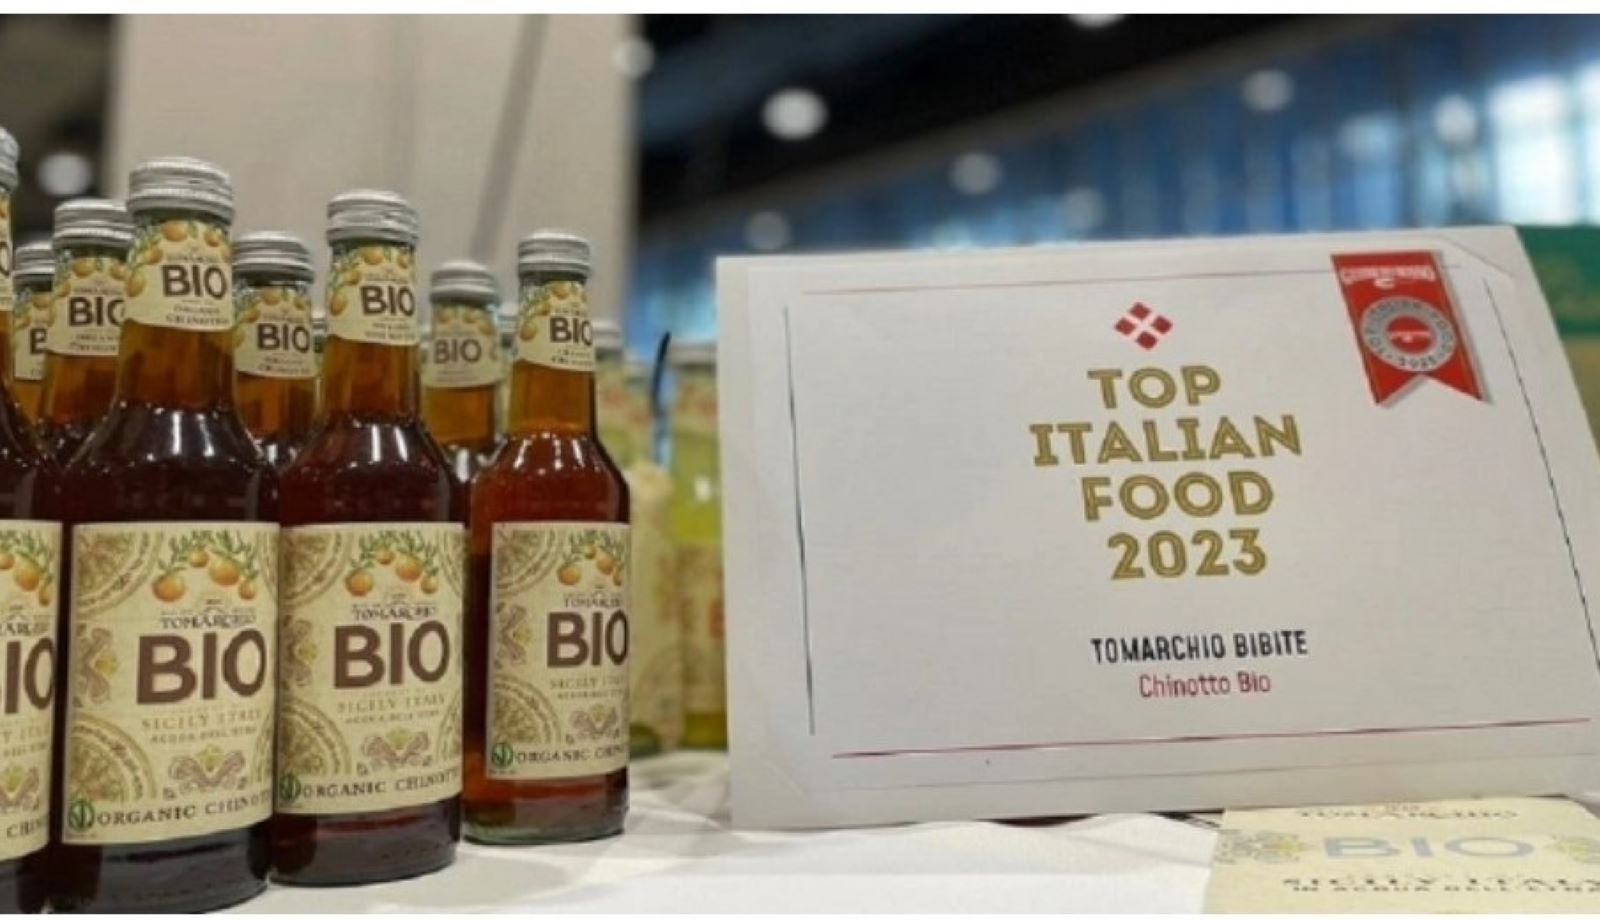 Chinotto BIO nella guida “Top Italian Food 2023” di Gambero Rosso